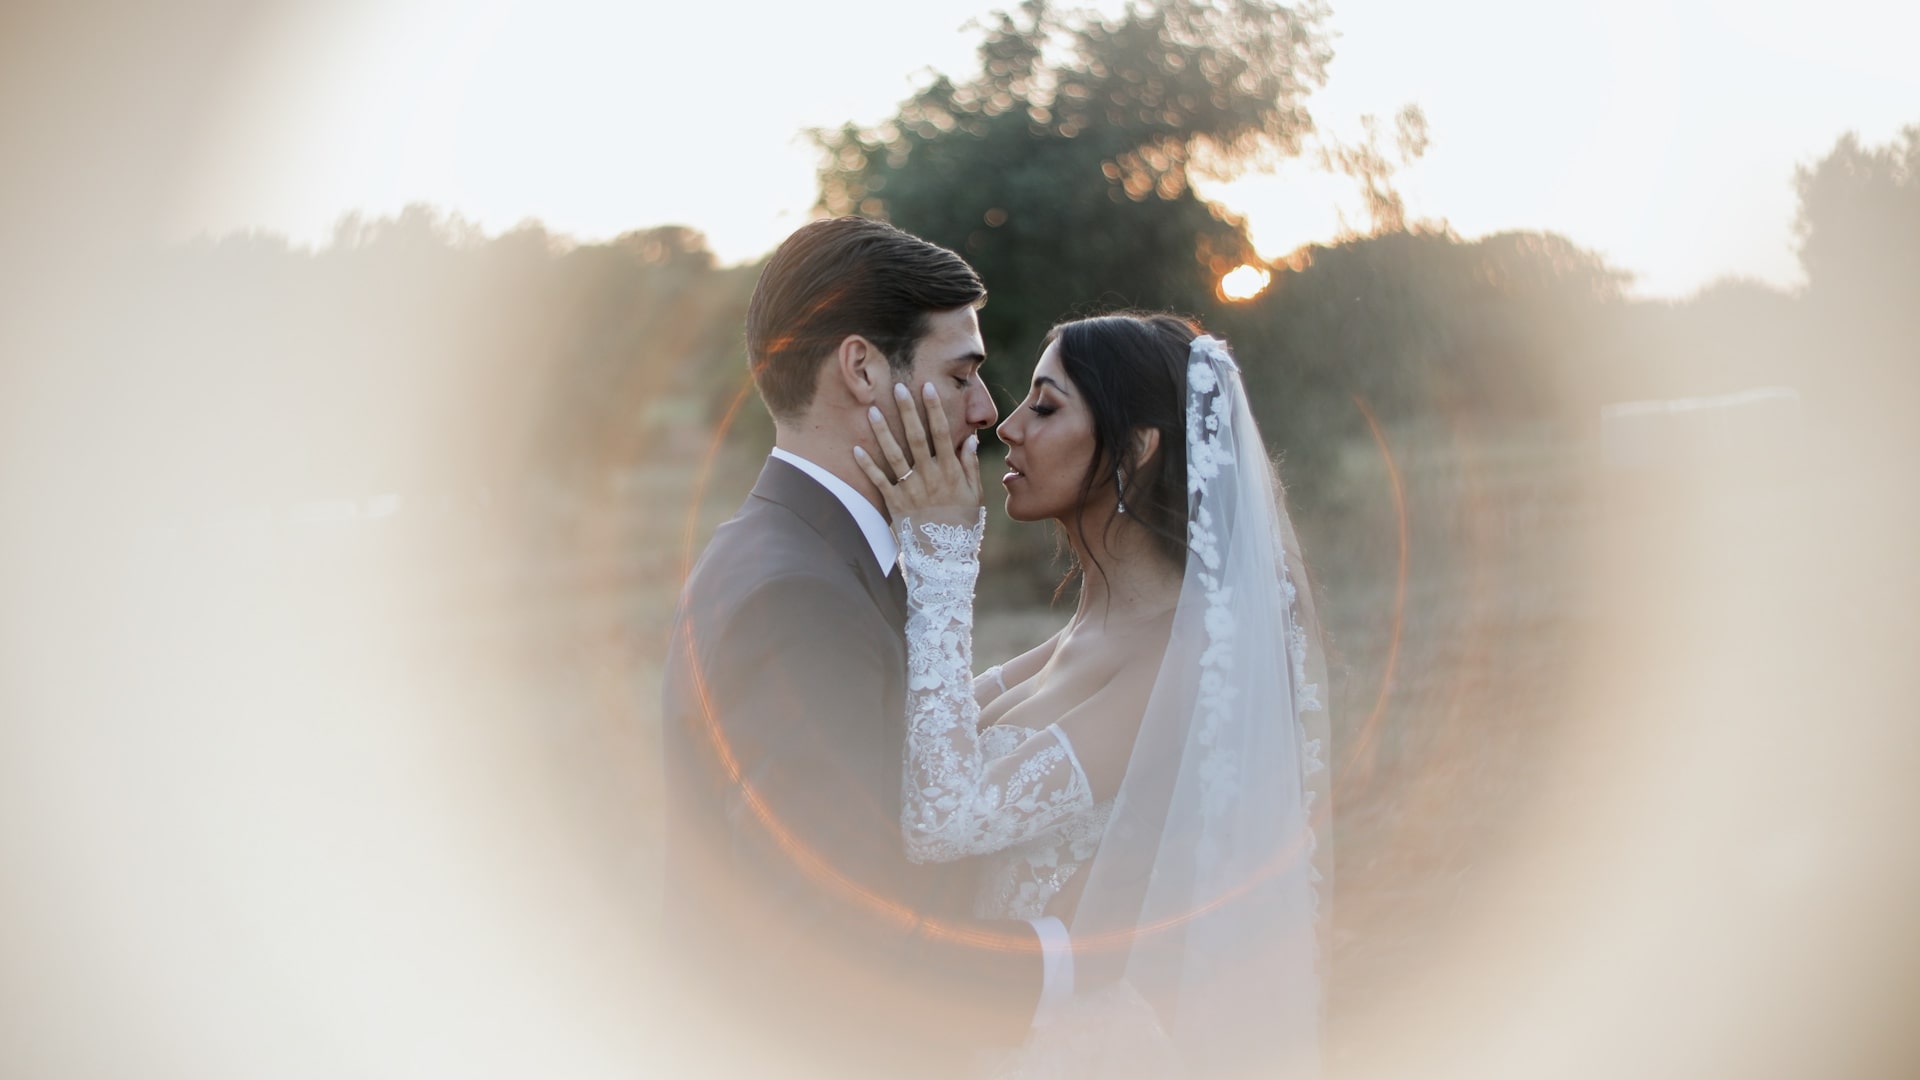 Matrimonio-Virginia-Mihajlovic-3 Wedding Virginia Mihajlovic and Alessandro Vogliacco